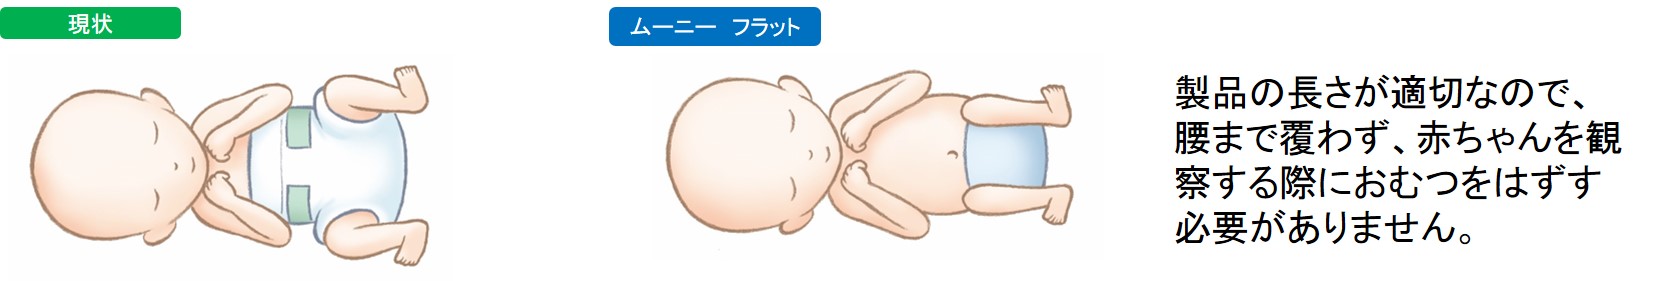 製品の長さが適切なので、腰まで覆わず、赤ちゃんを観察する際におむつをはずす必要がありません。